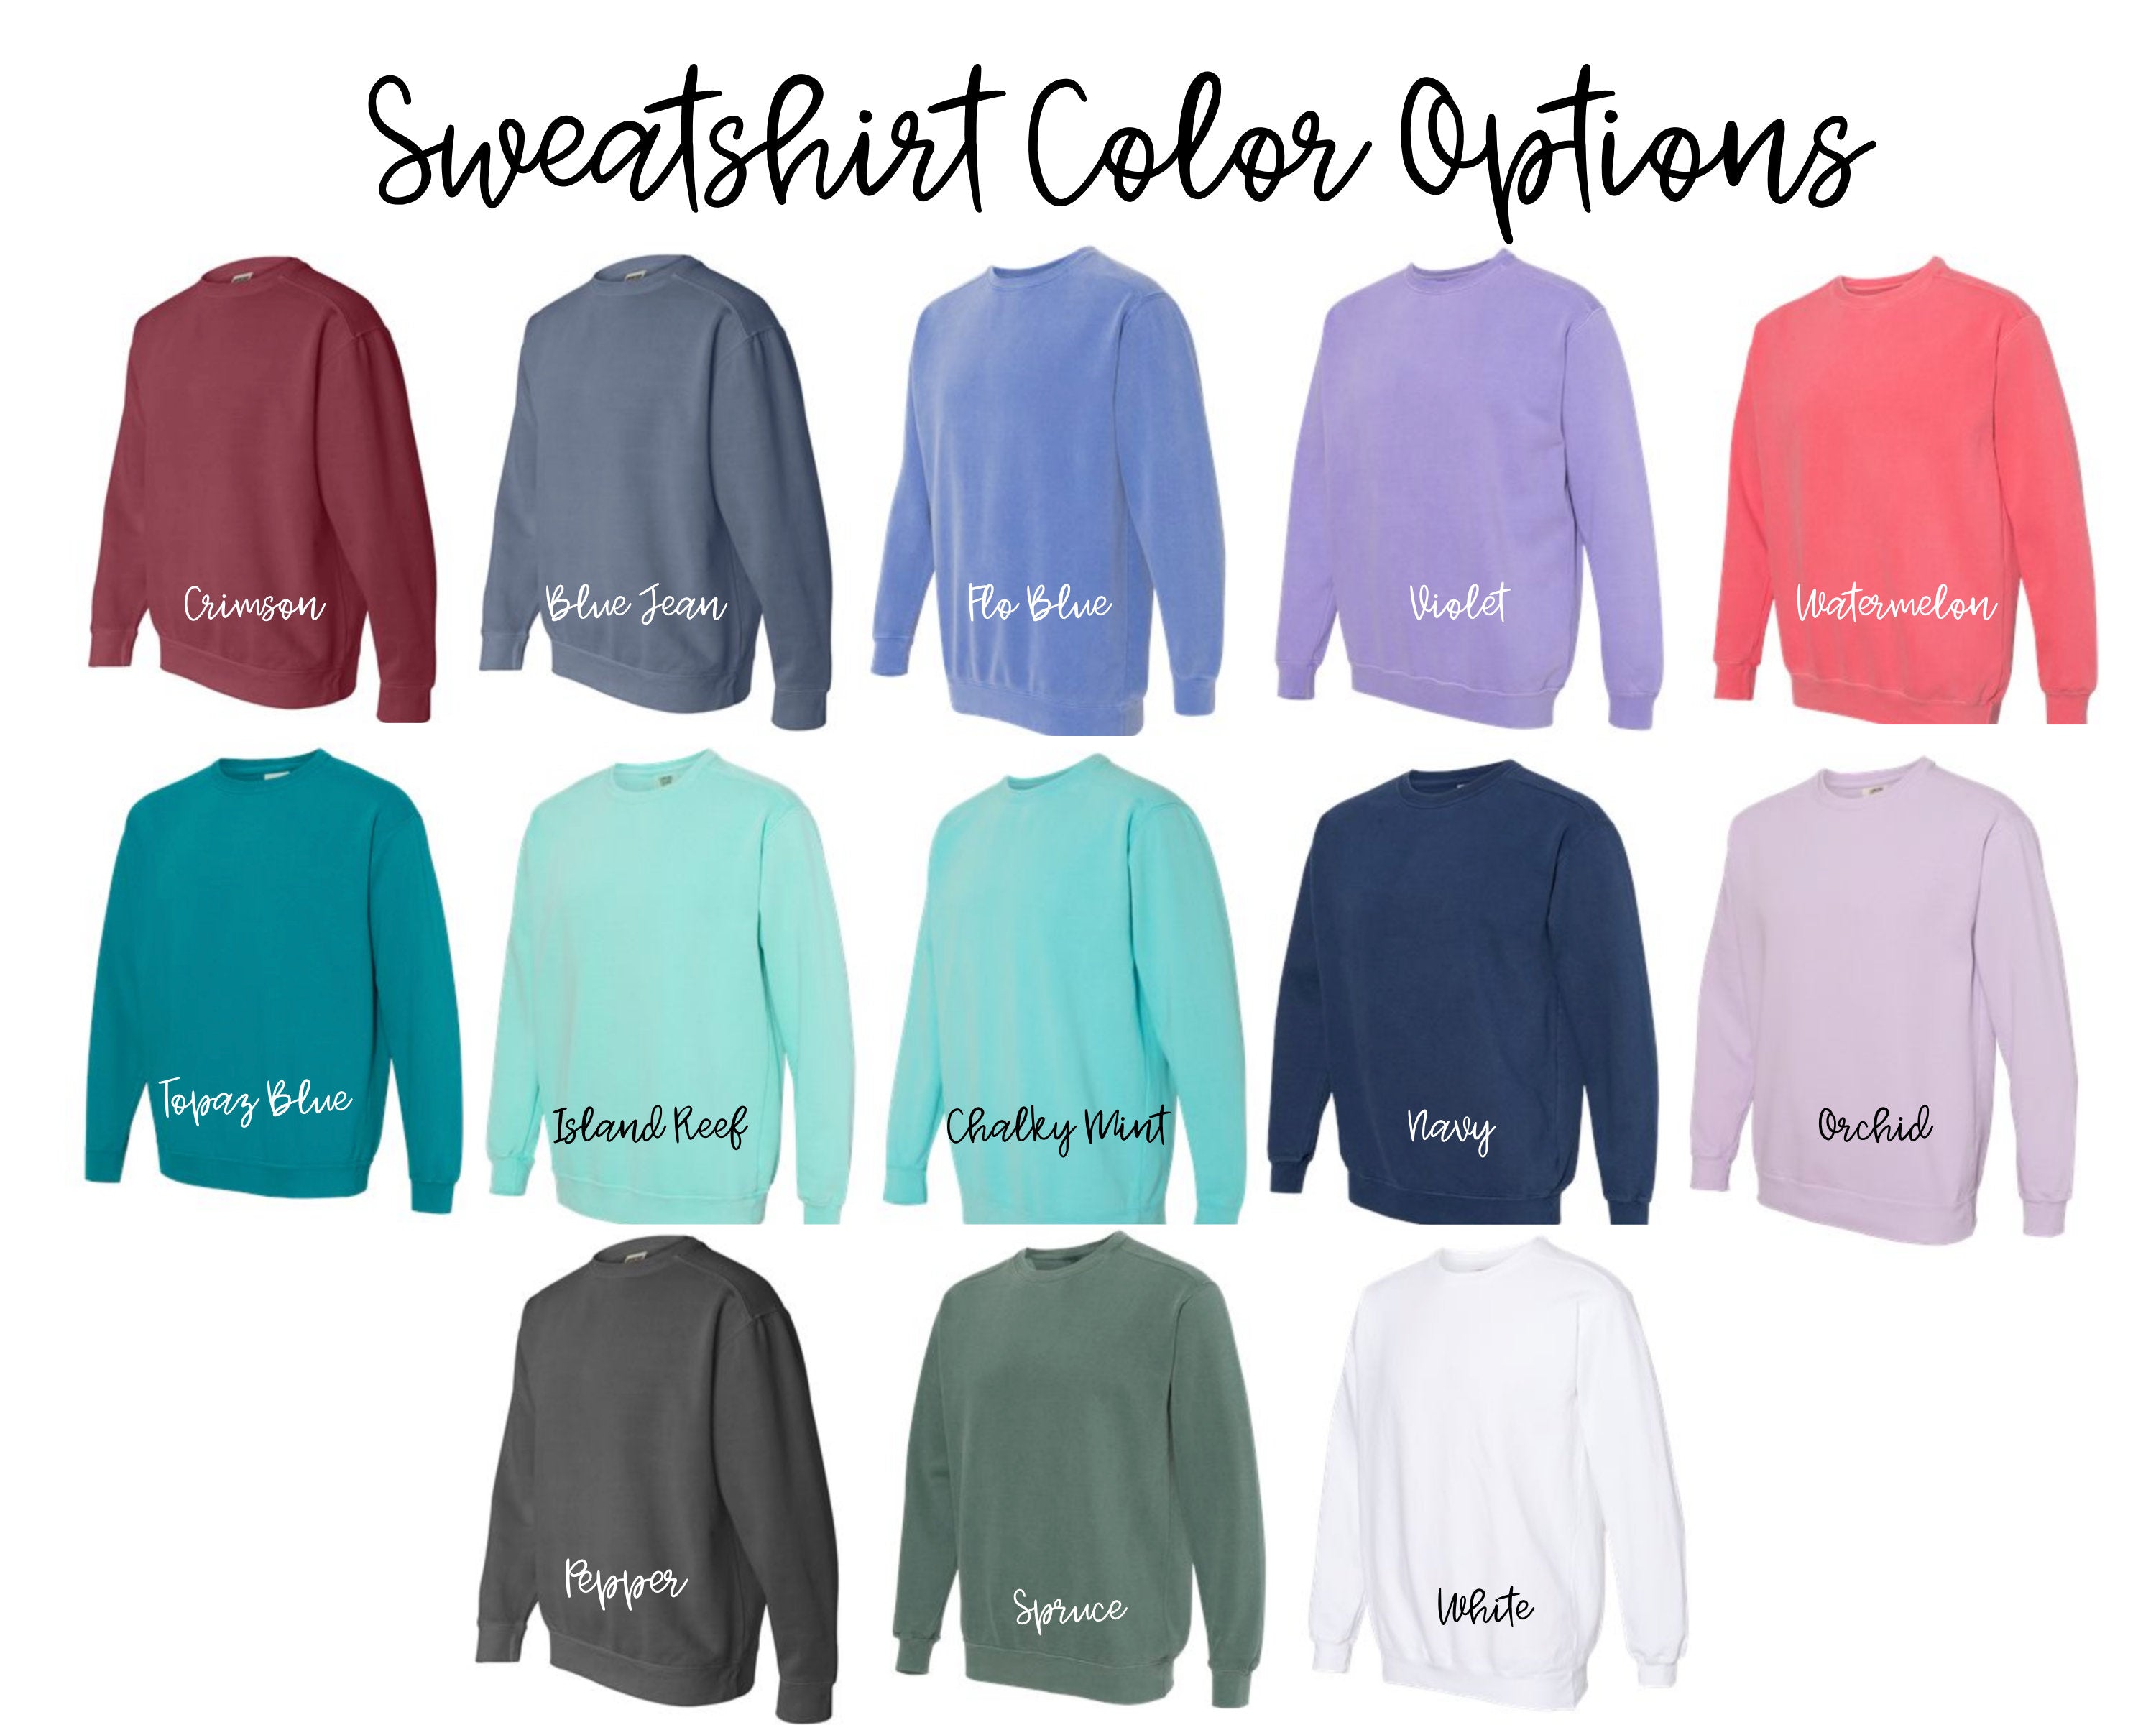 Monogrammed Comfort Colors Sweatshirt